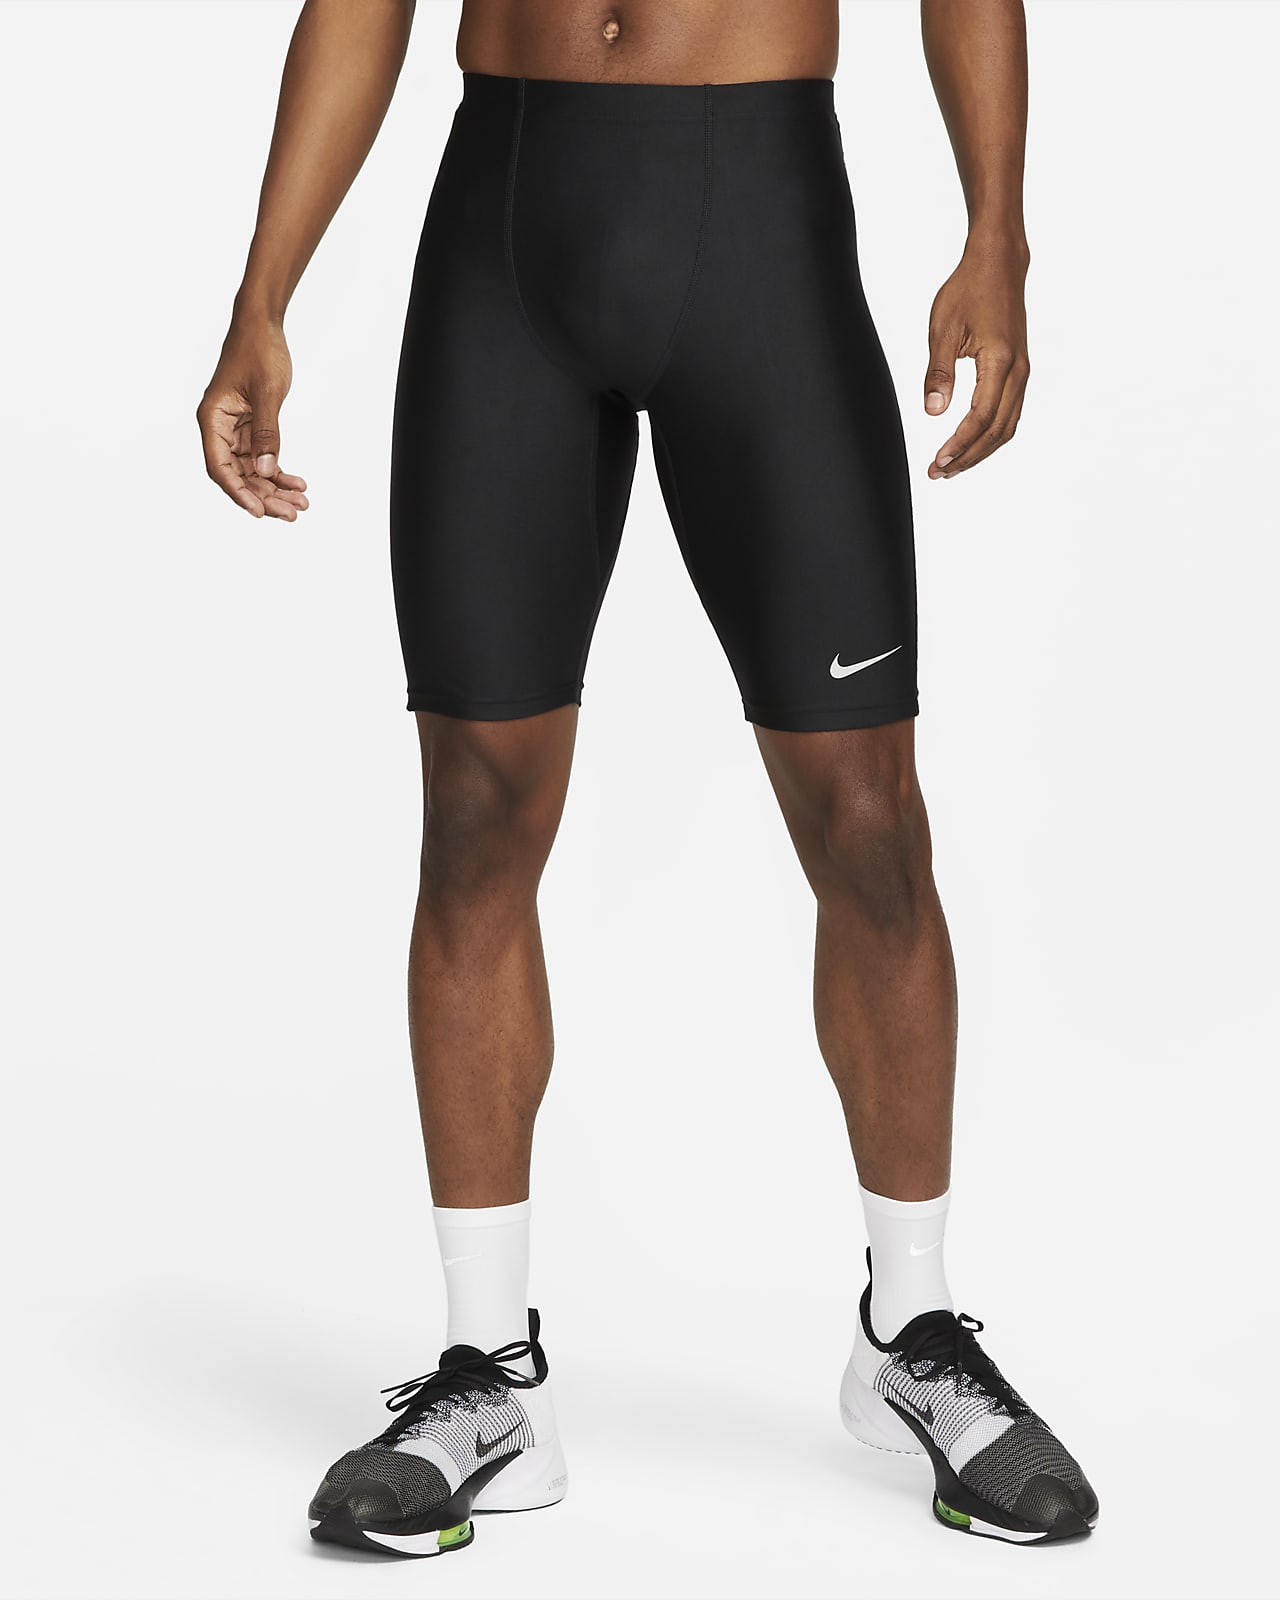 Ανδρικό κολάν αγώνων με μήκος 1/2 Nike Dri-FIT Fast